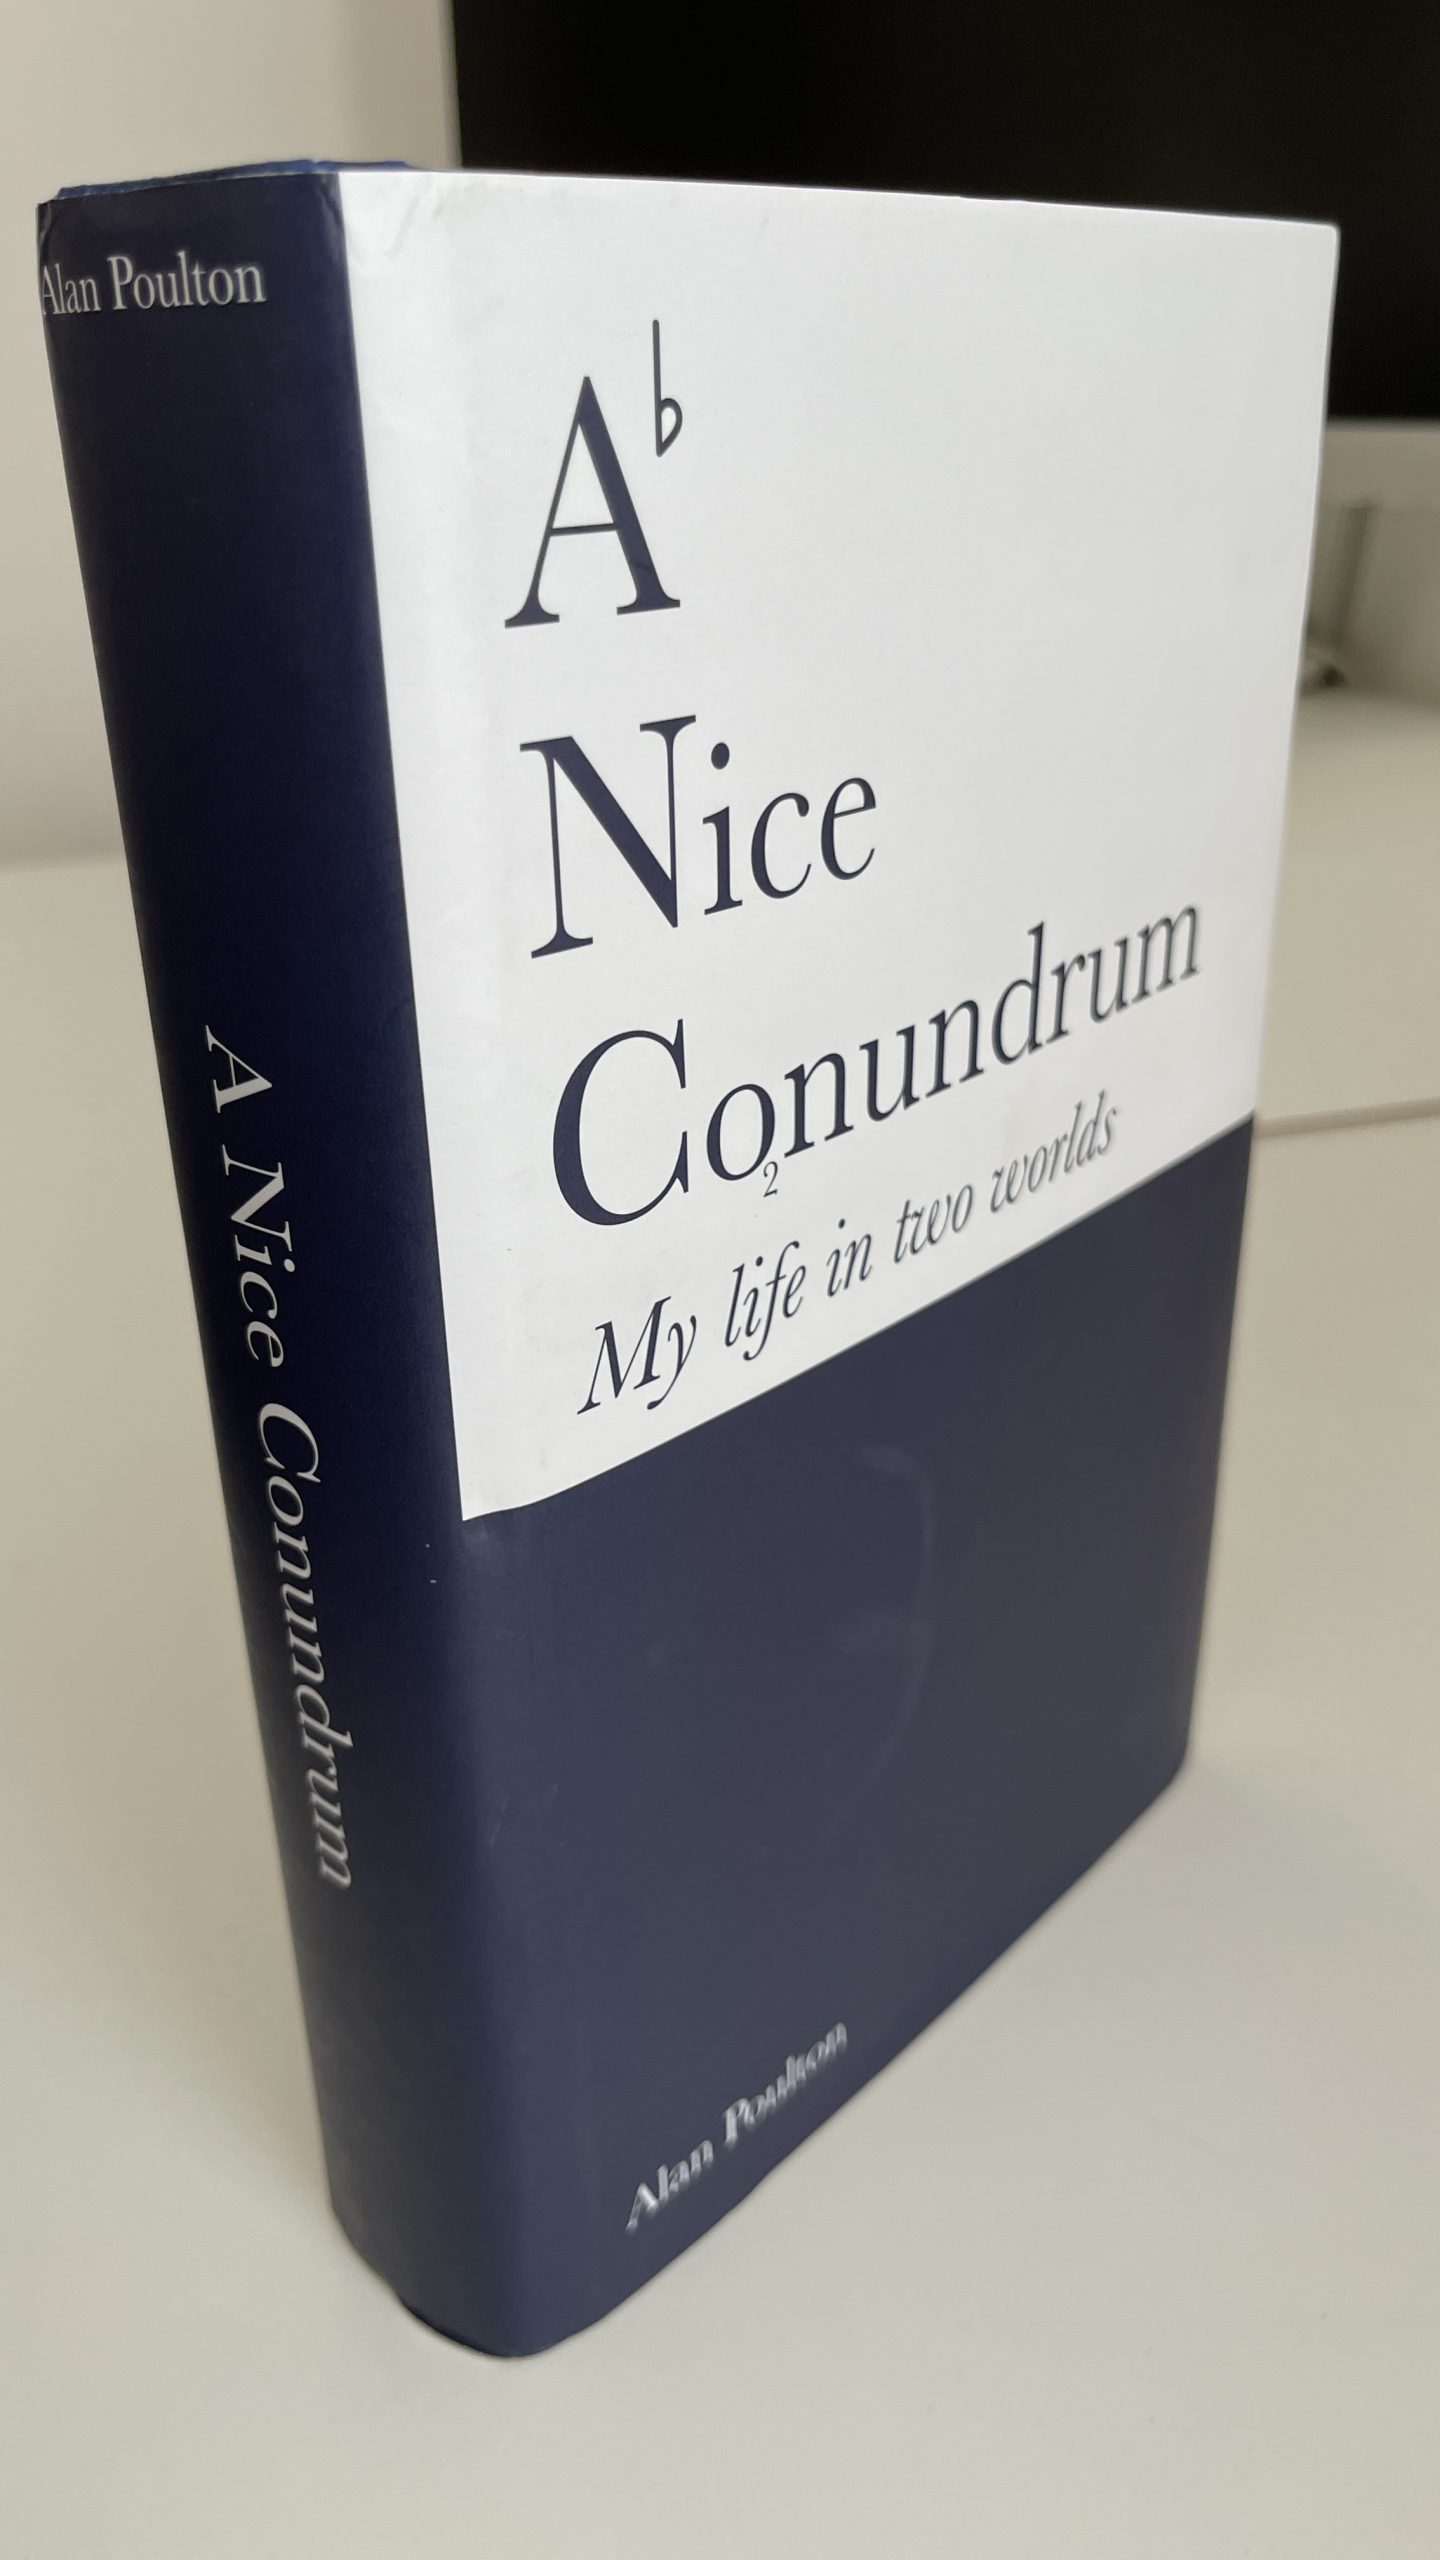 A Nice Conundrum - Alan Poulton